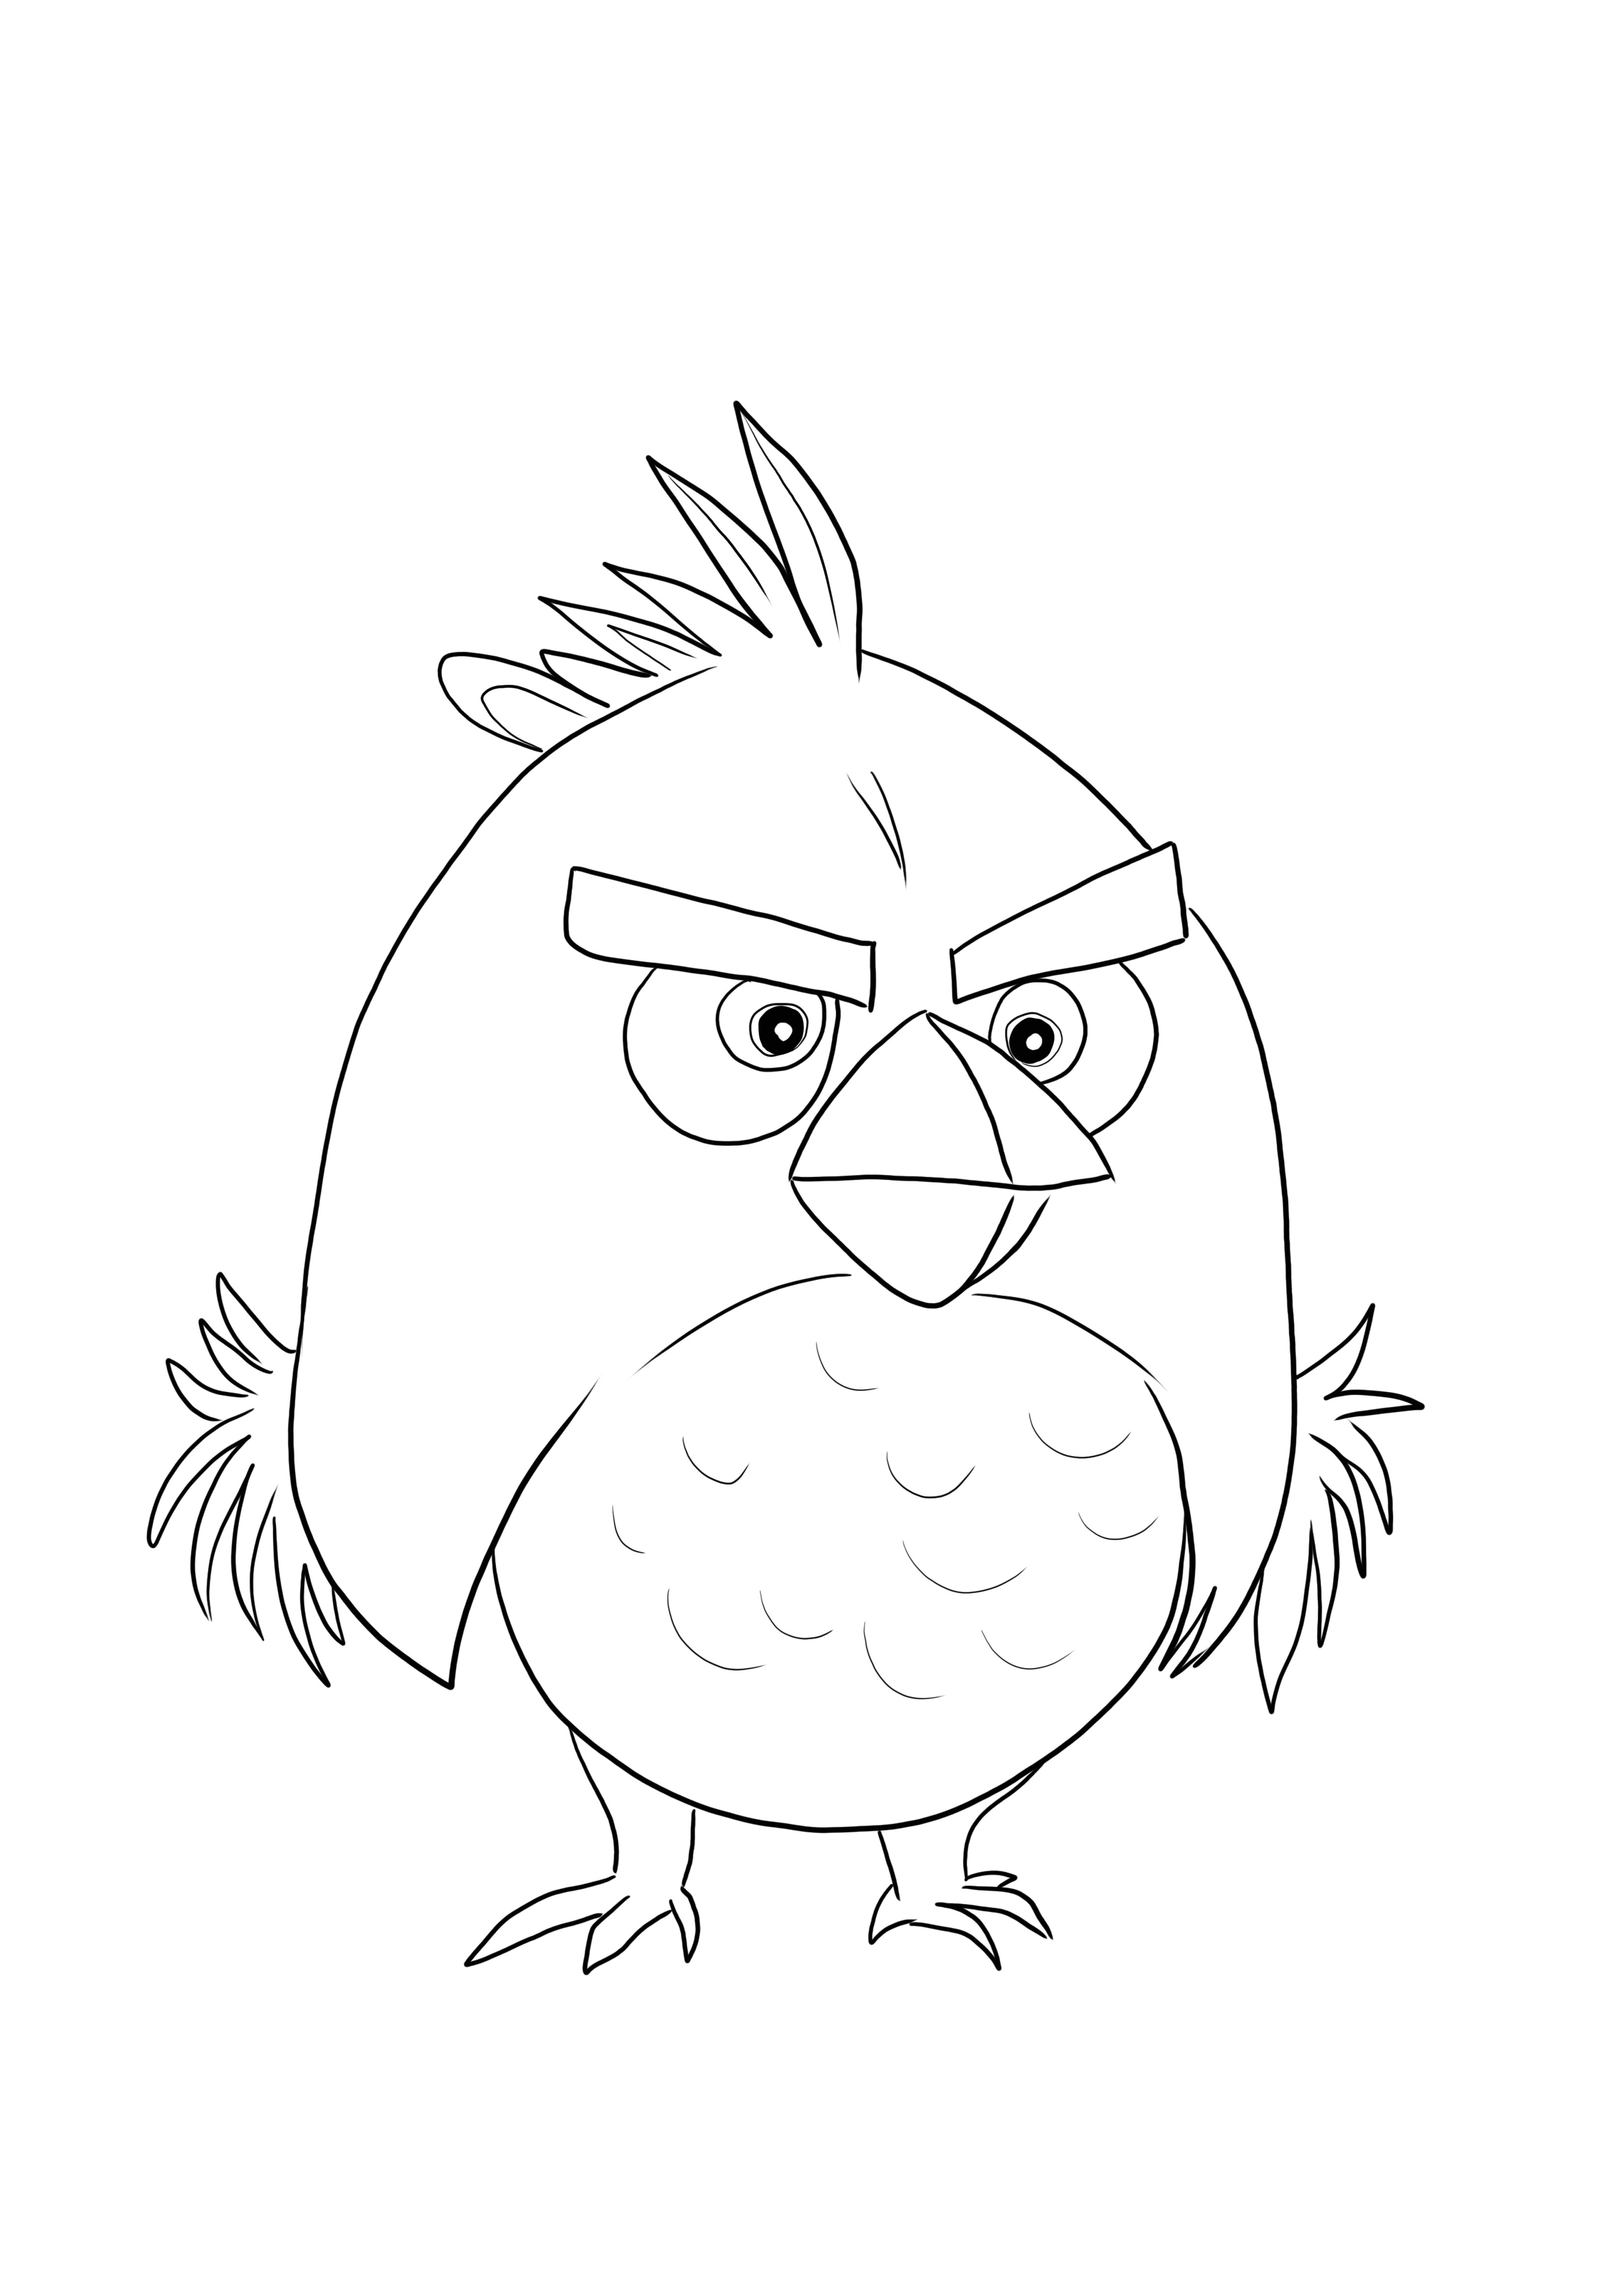 Red Bird de Angry Birds está listo para imprimirse y colorearse con los colores favoritos